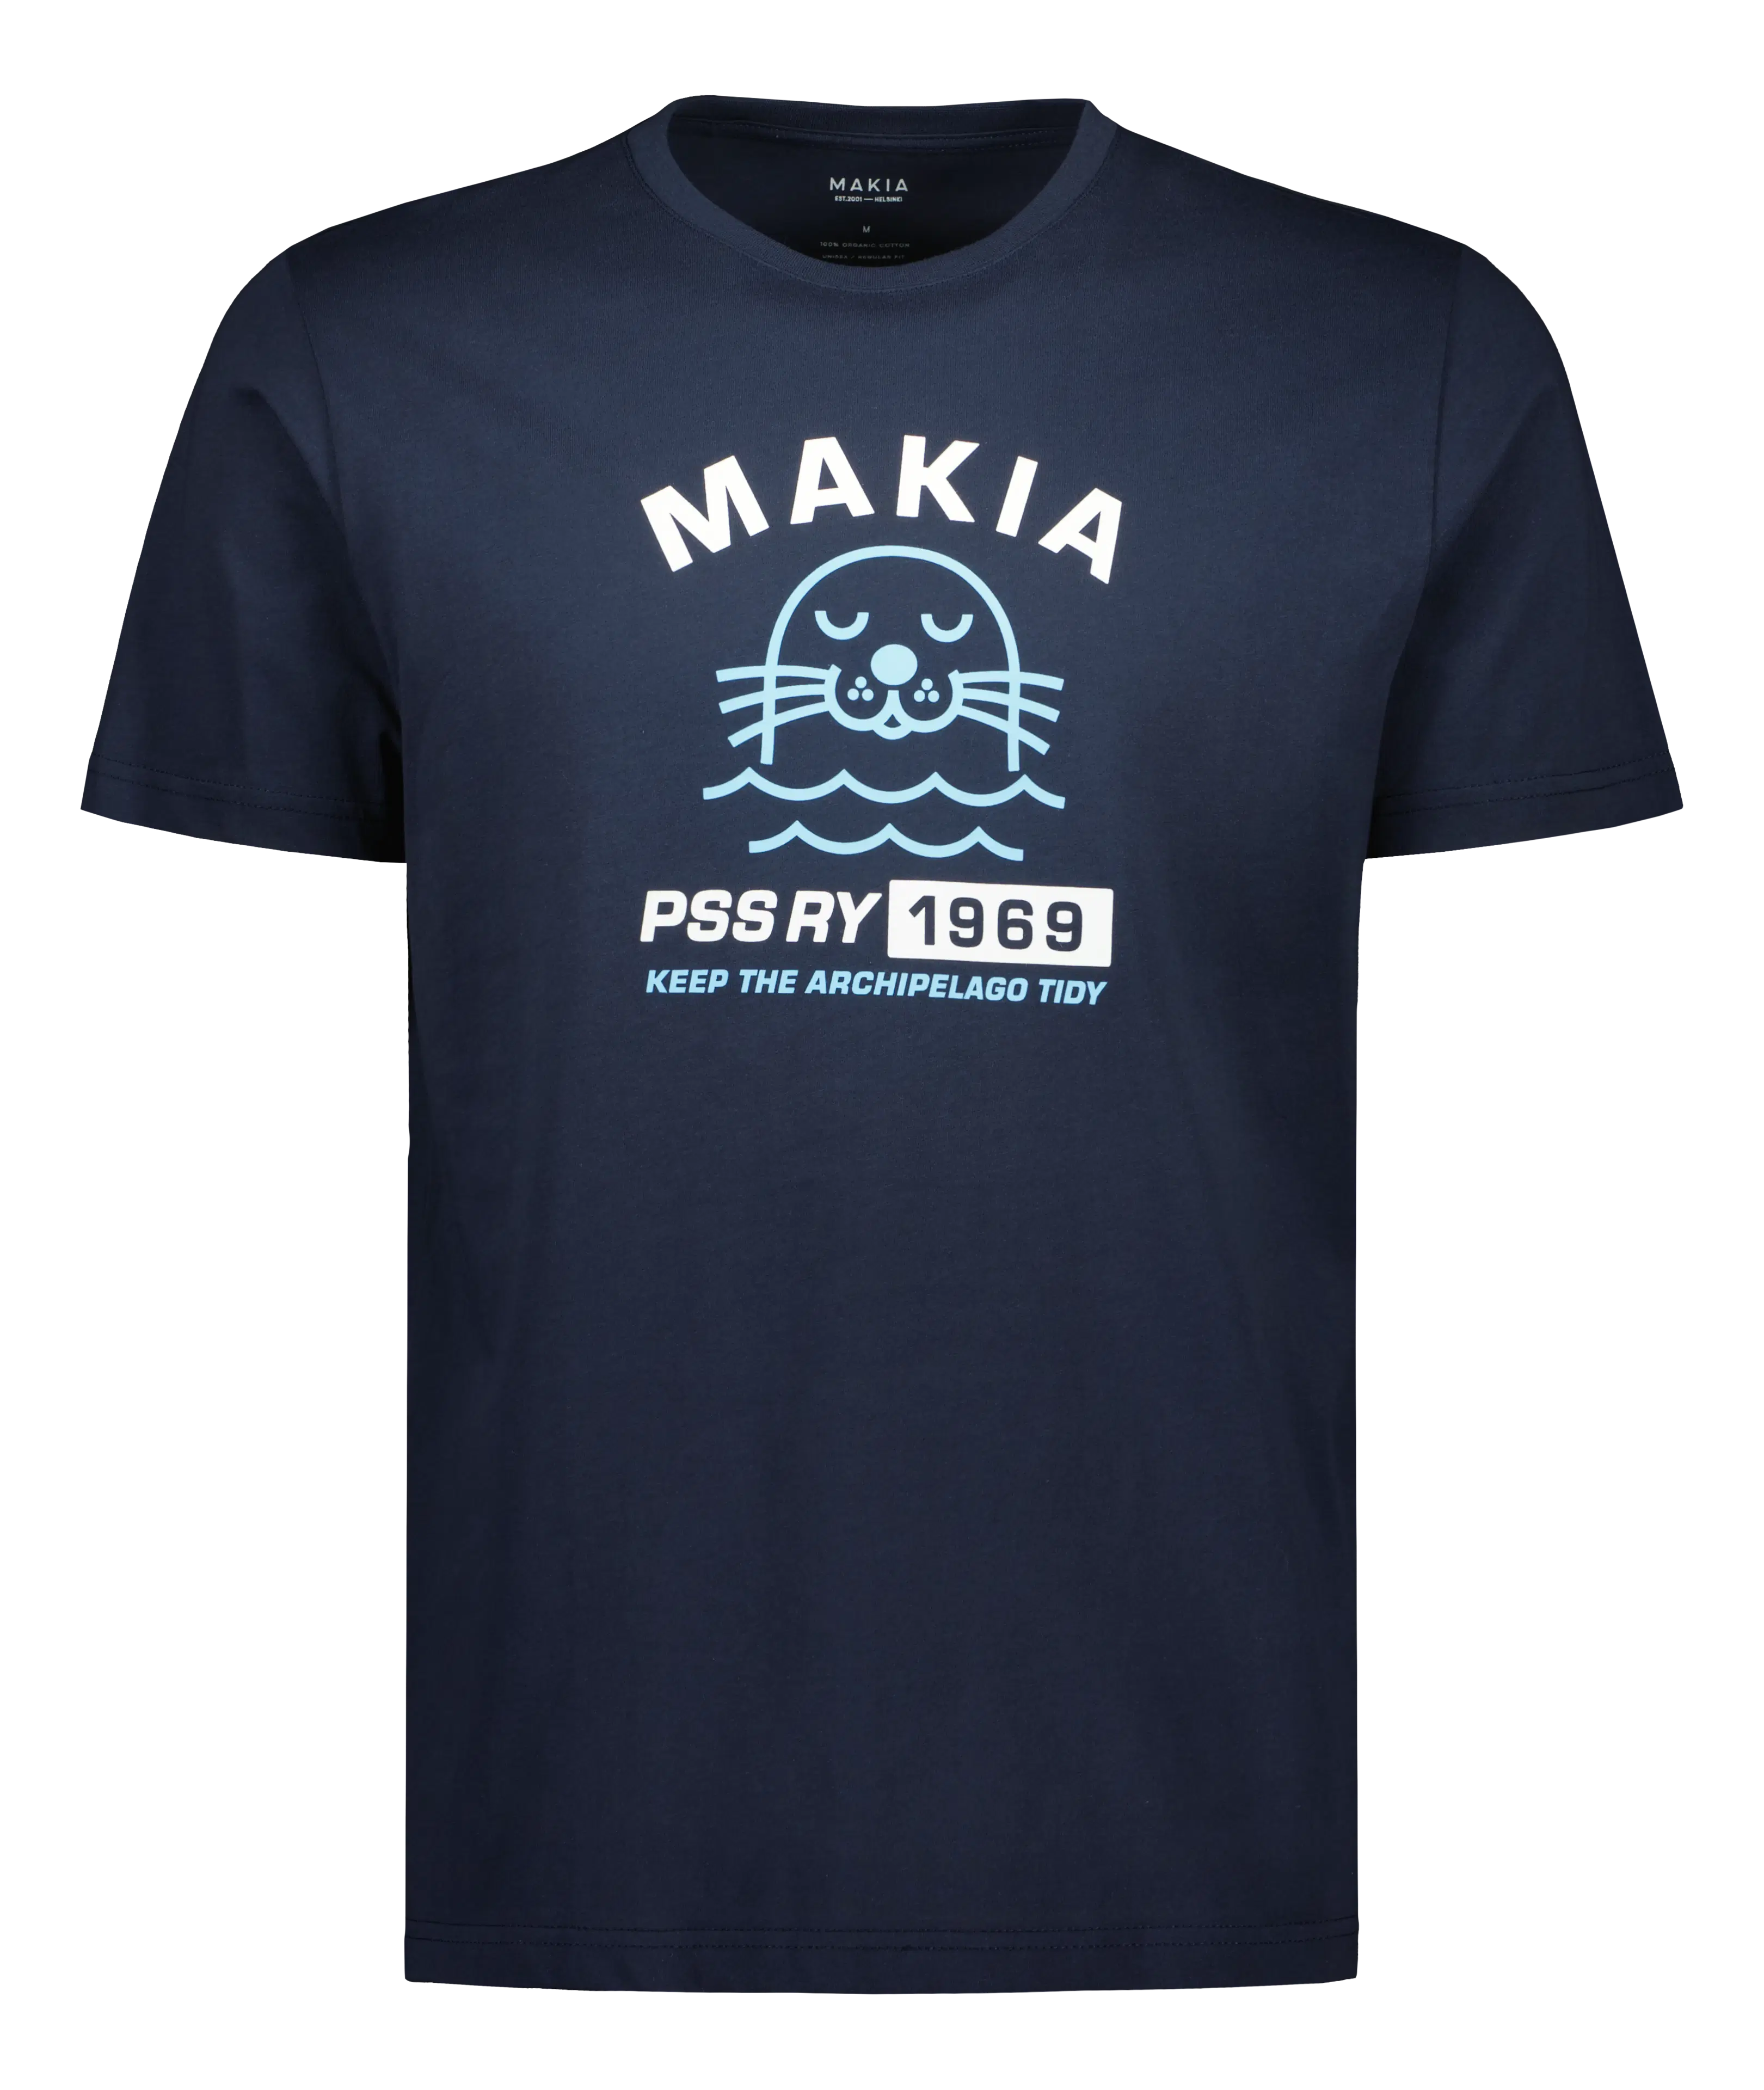 Makia & Pidä saaristo siistinä T-paita Airisto